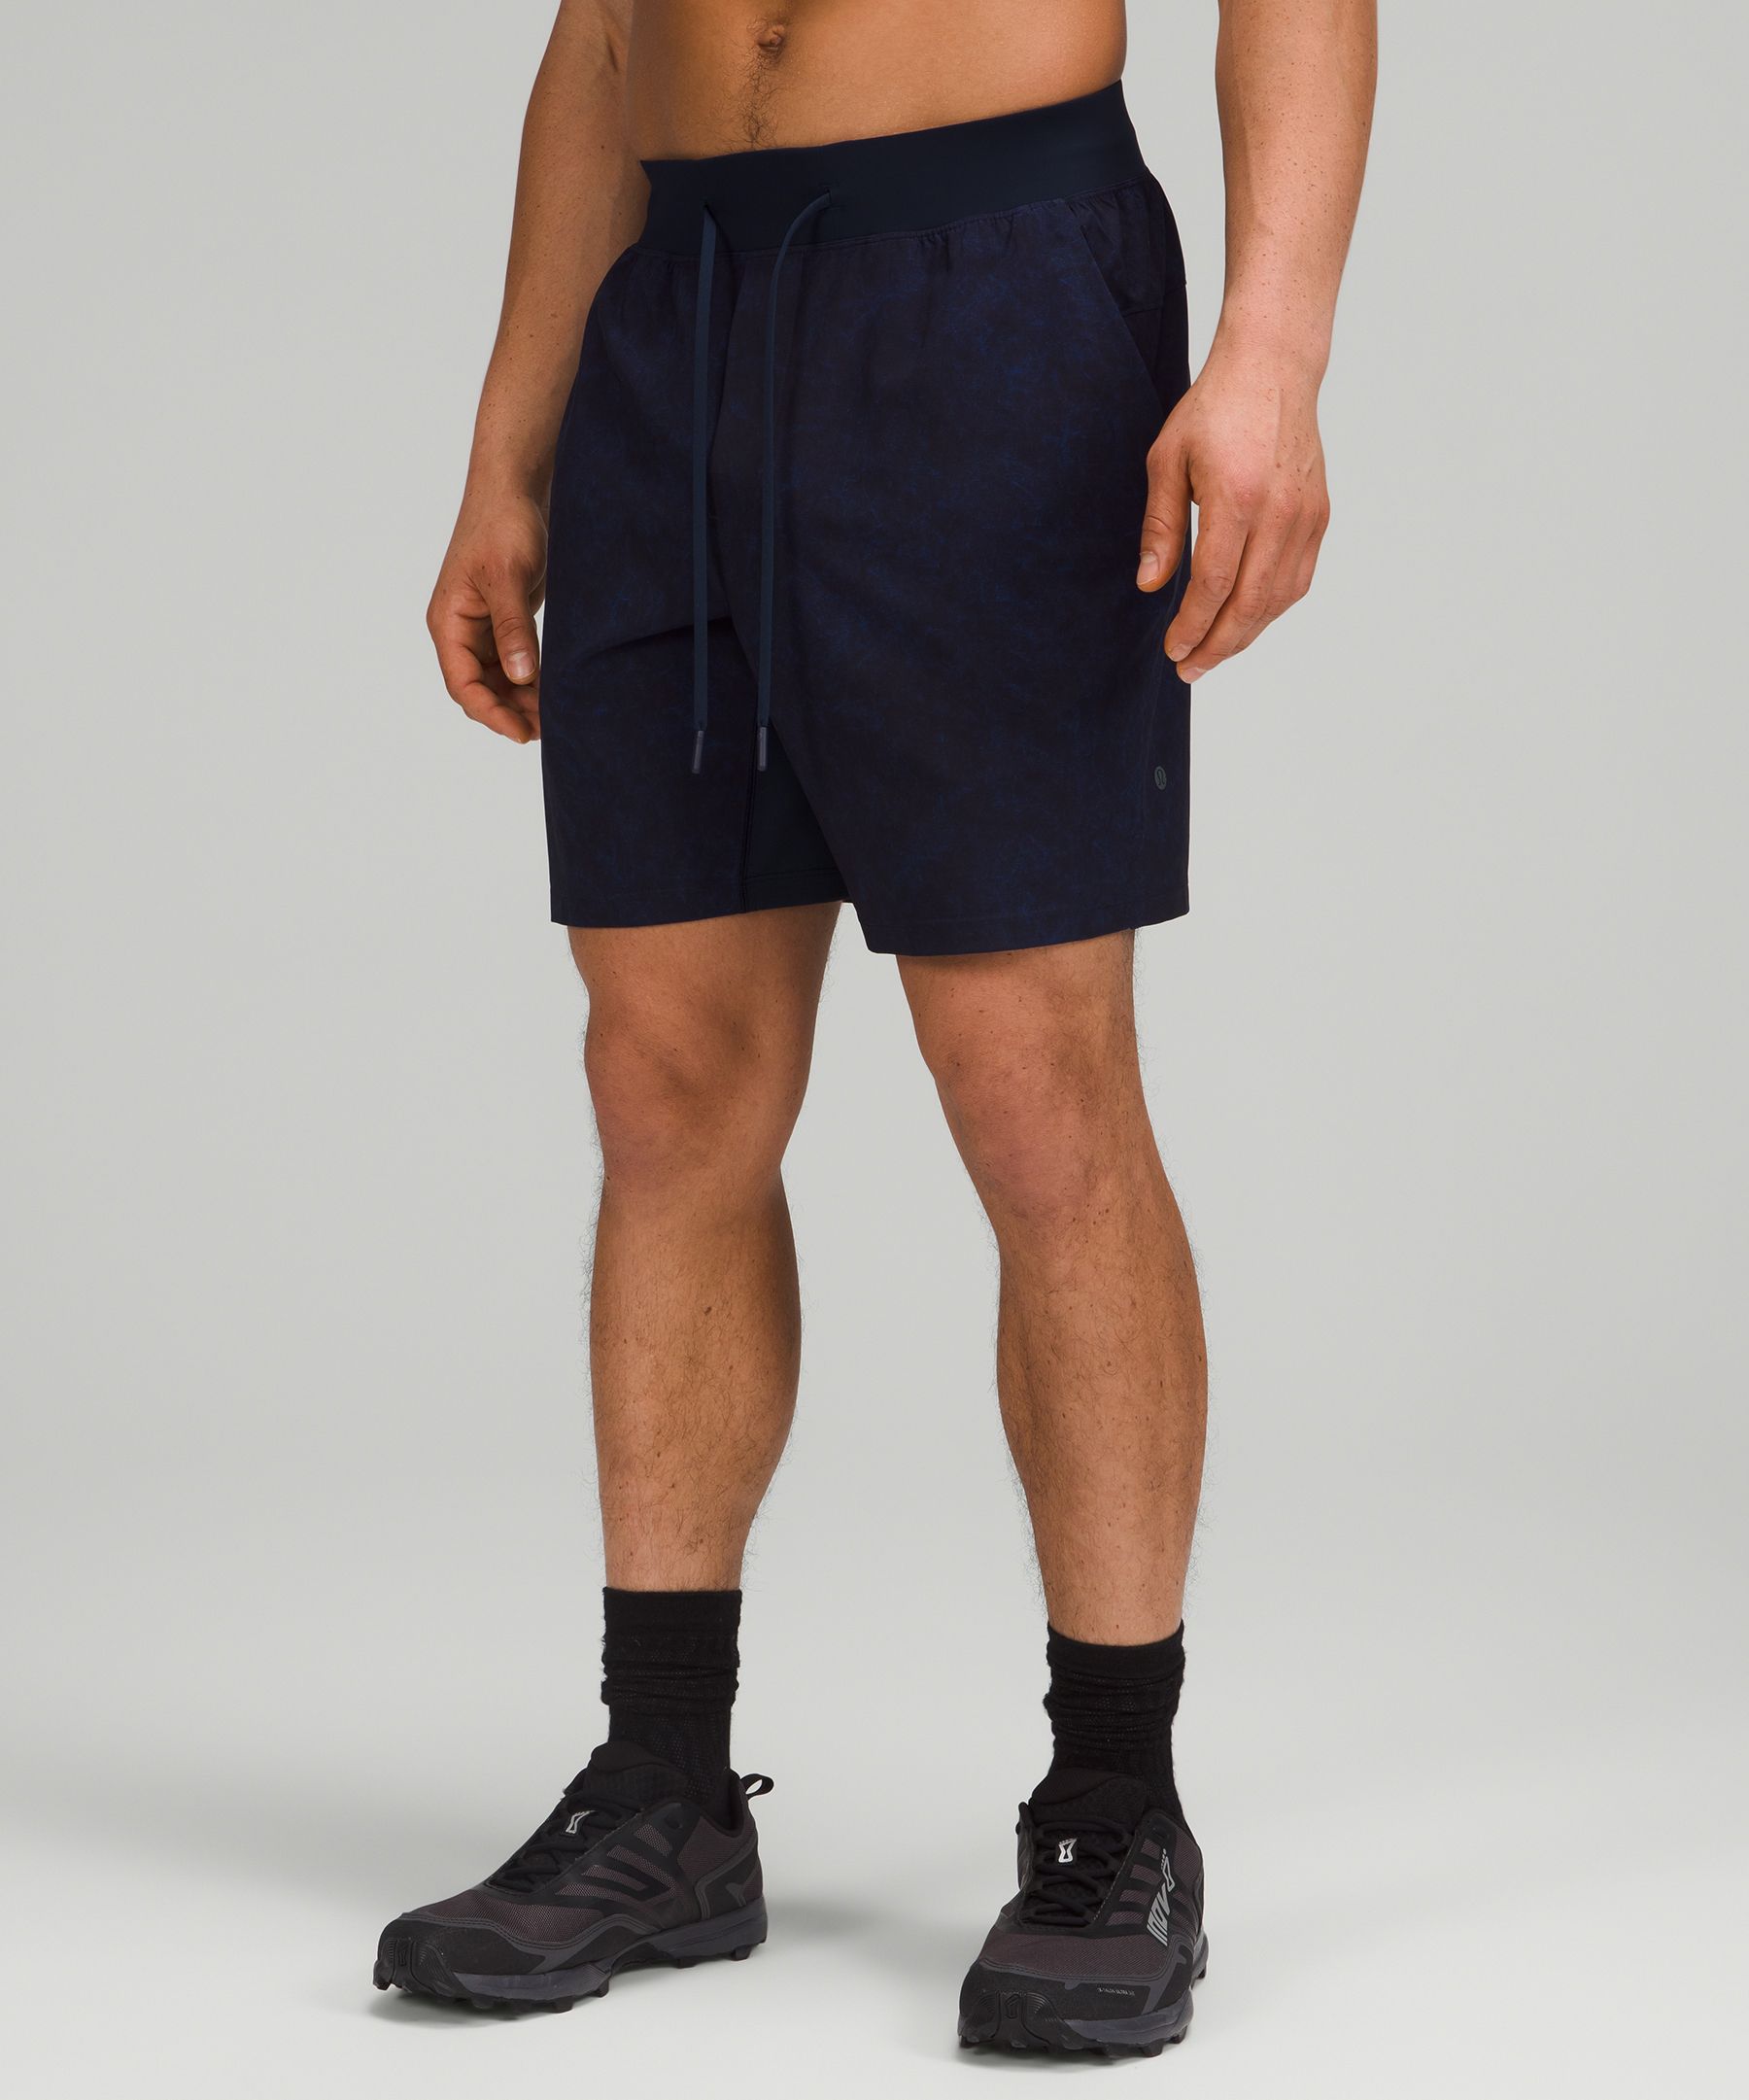 shorts that look like lululemon